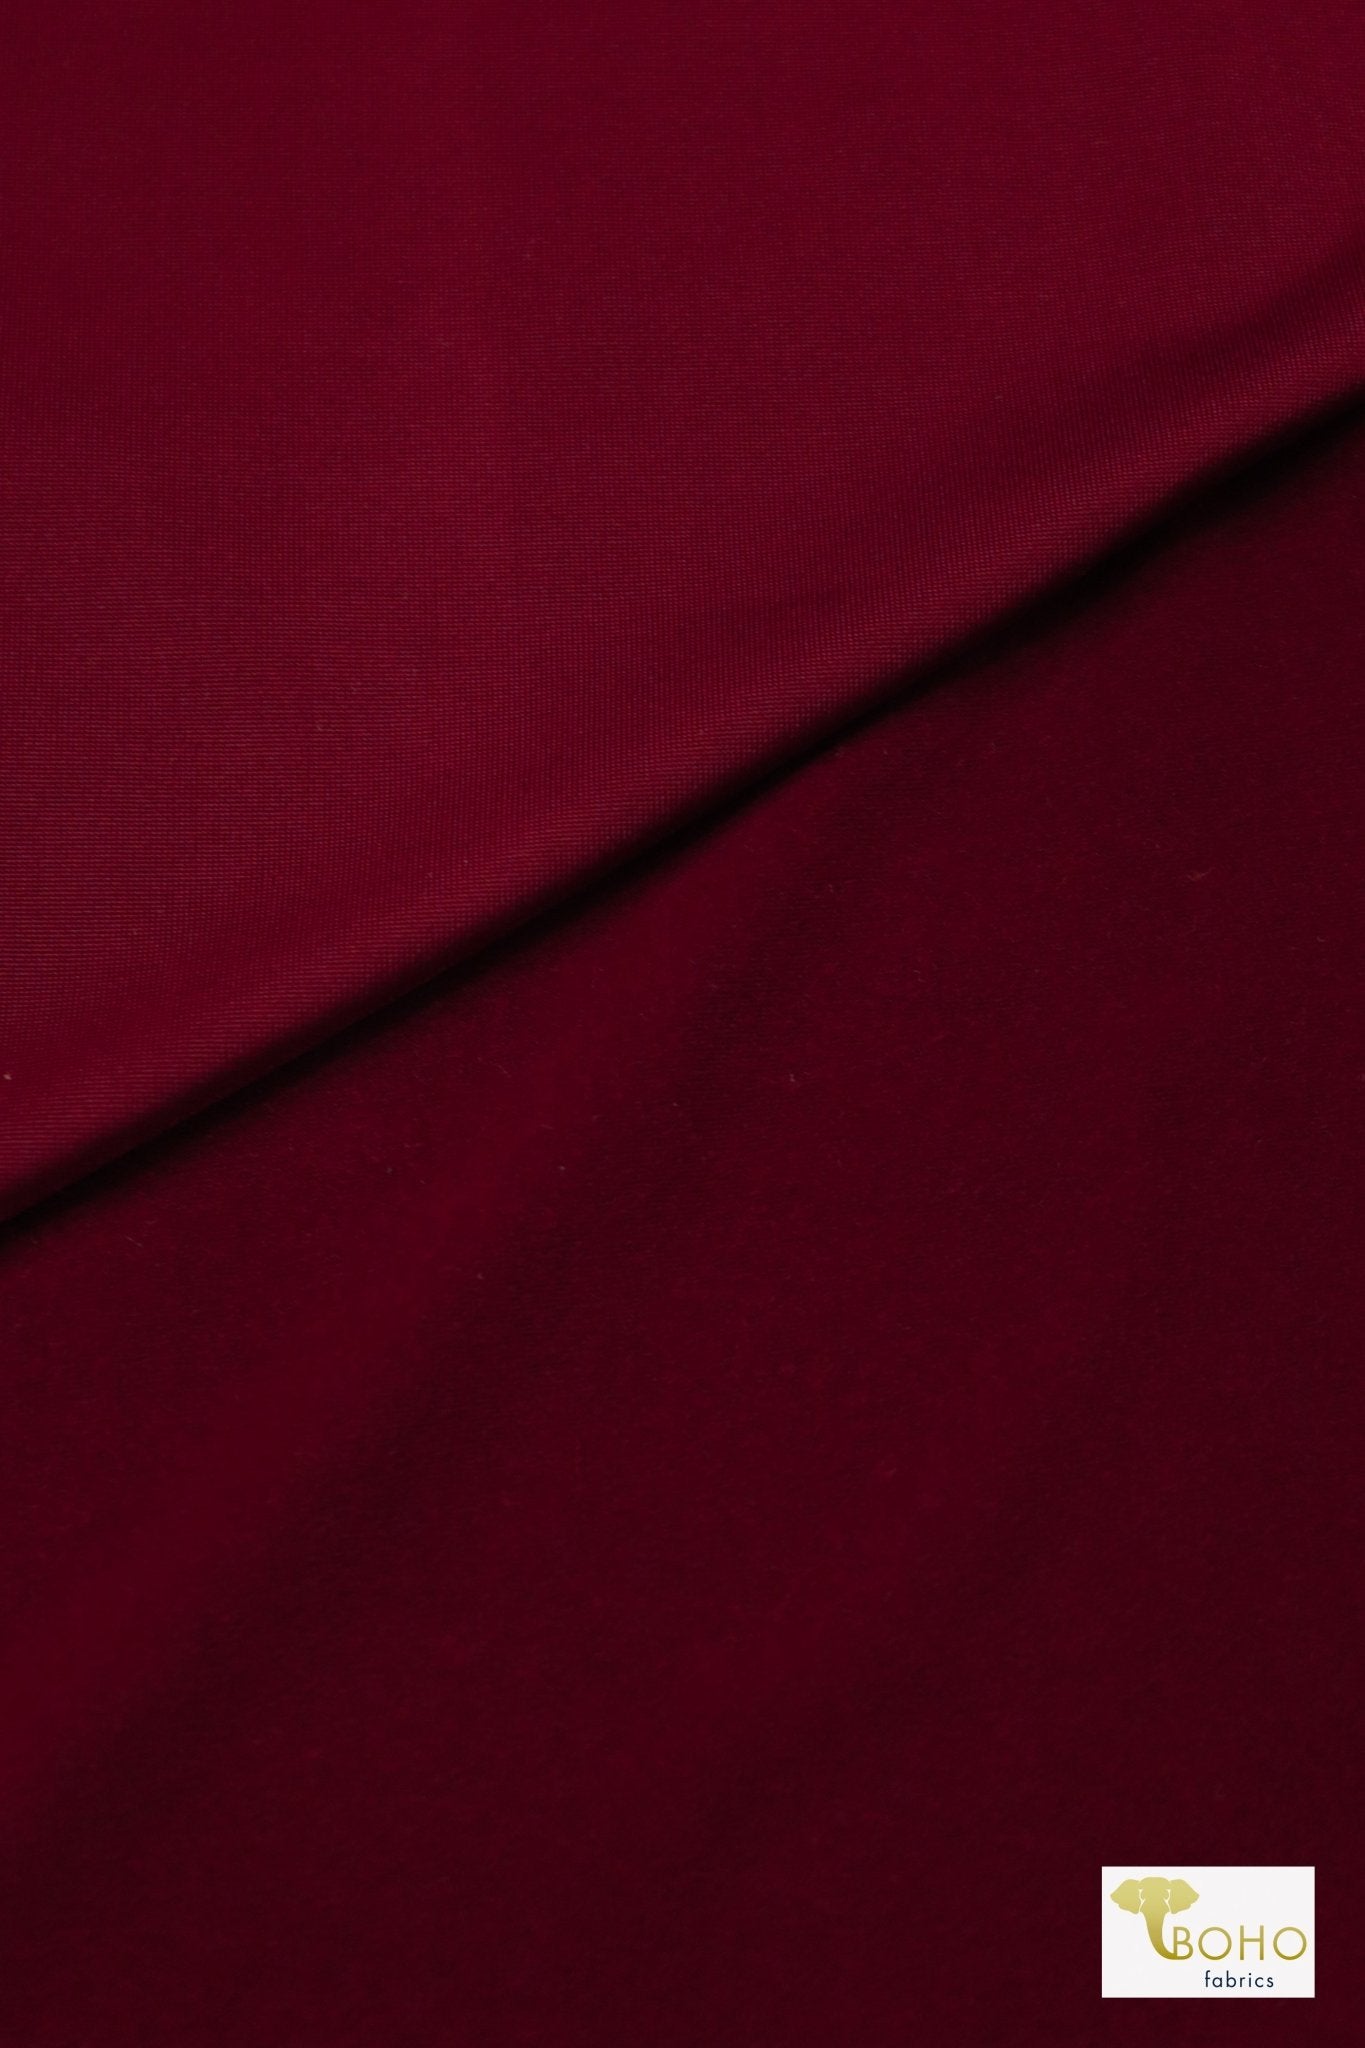 Garnet Red, Brushed Backed Knit, Brushed Poly Knit - Boho Fabrics